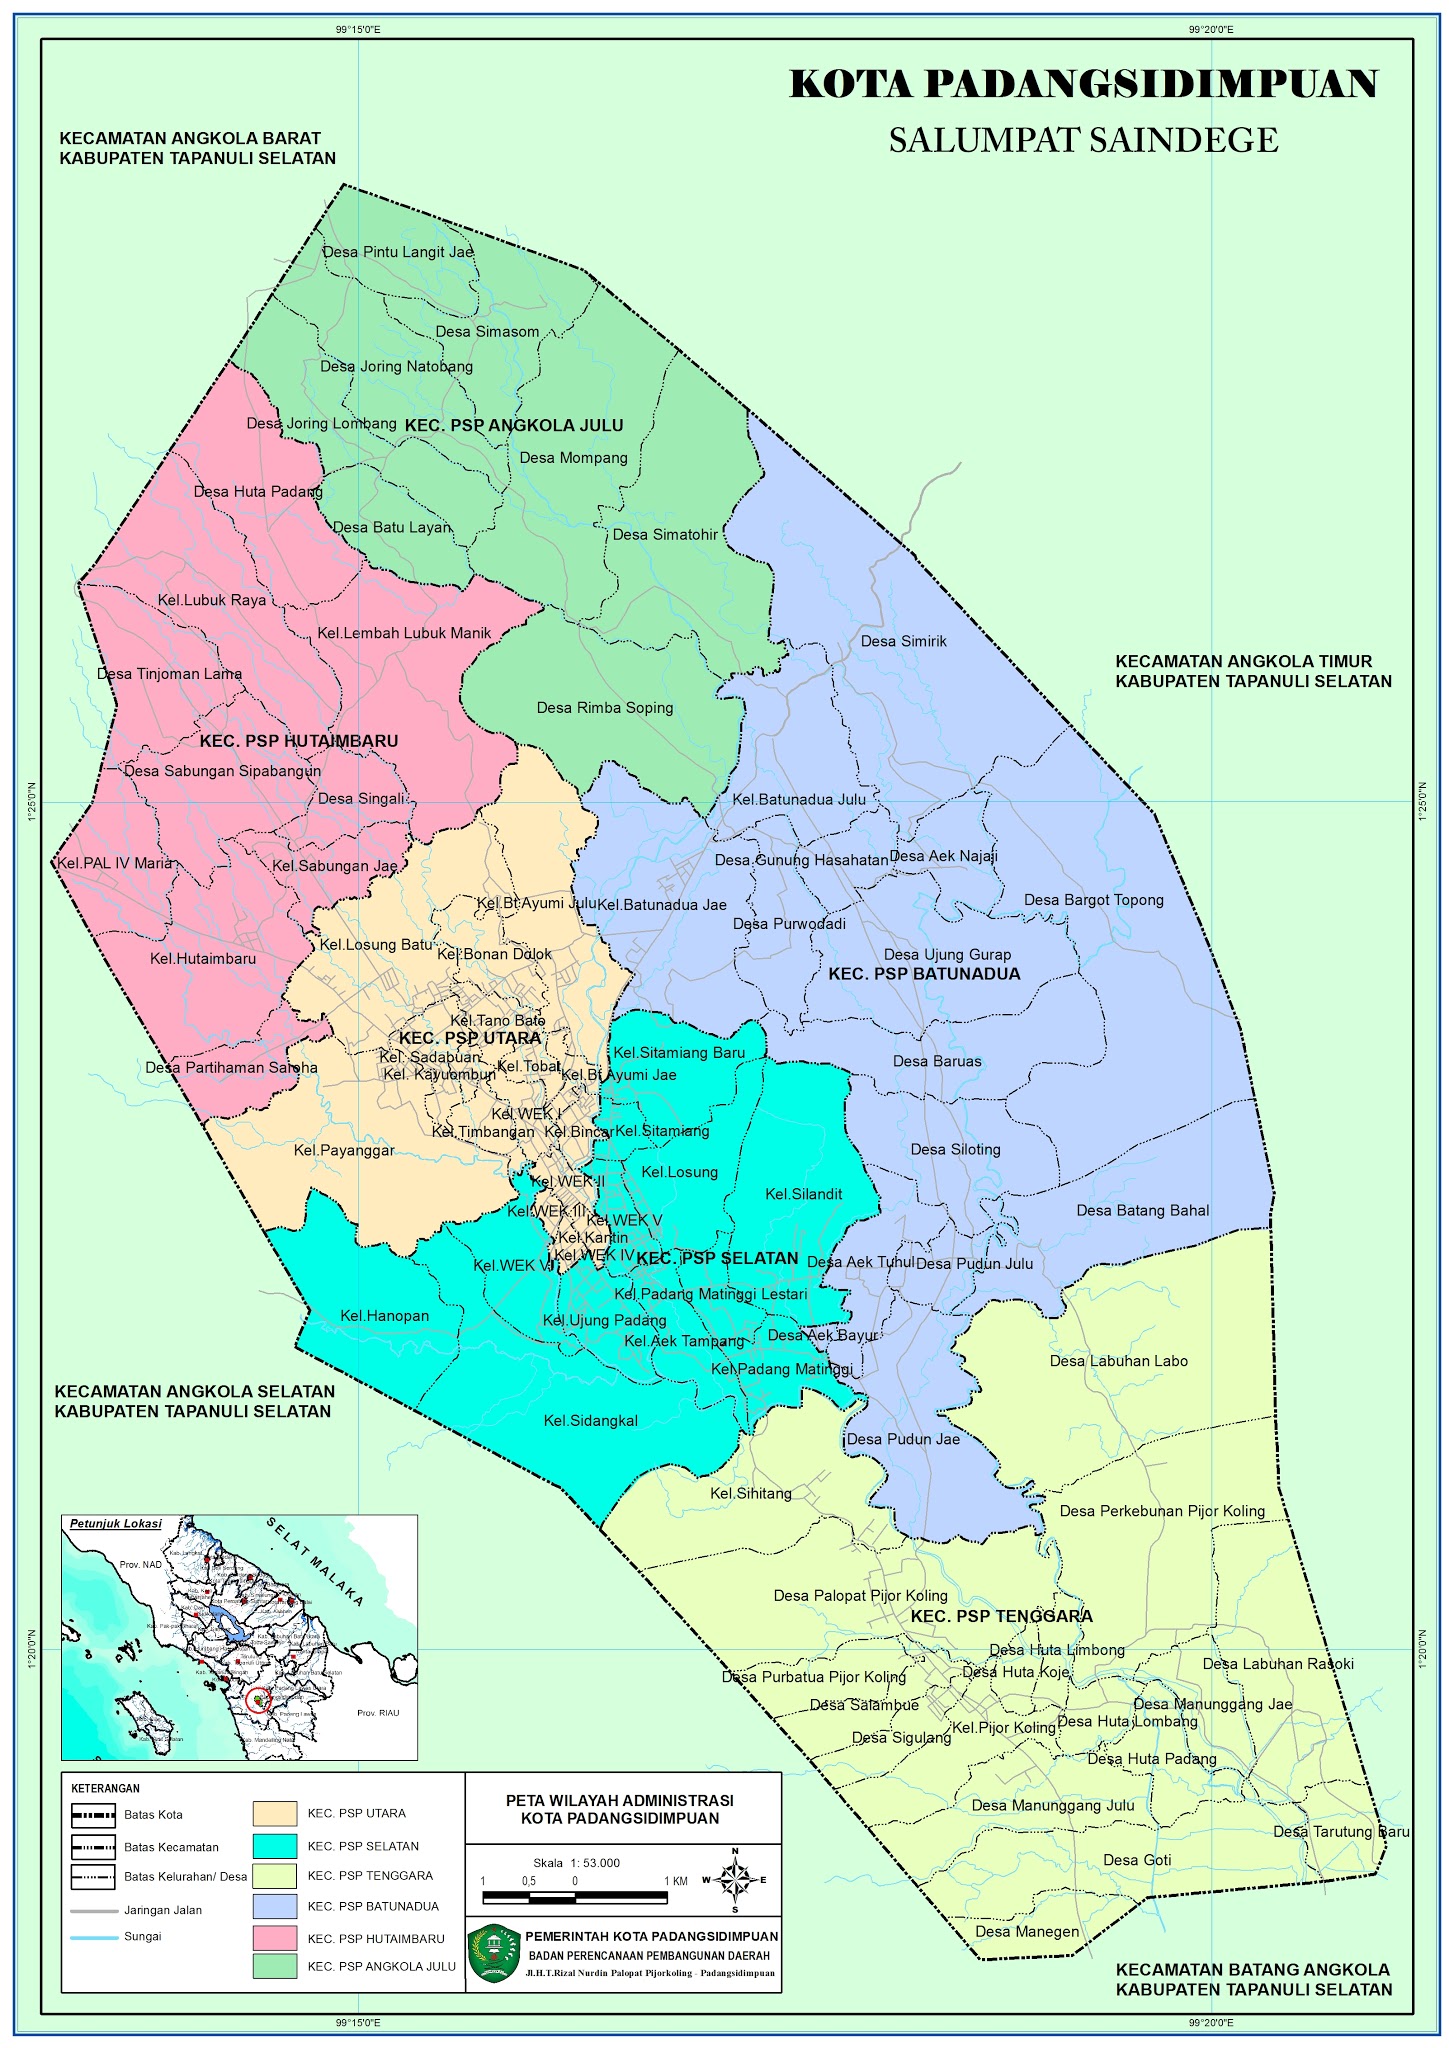 Peta Kota: Peta Kota Padangsidimpuan